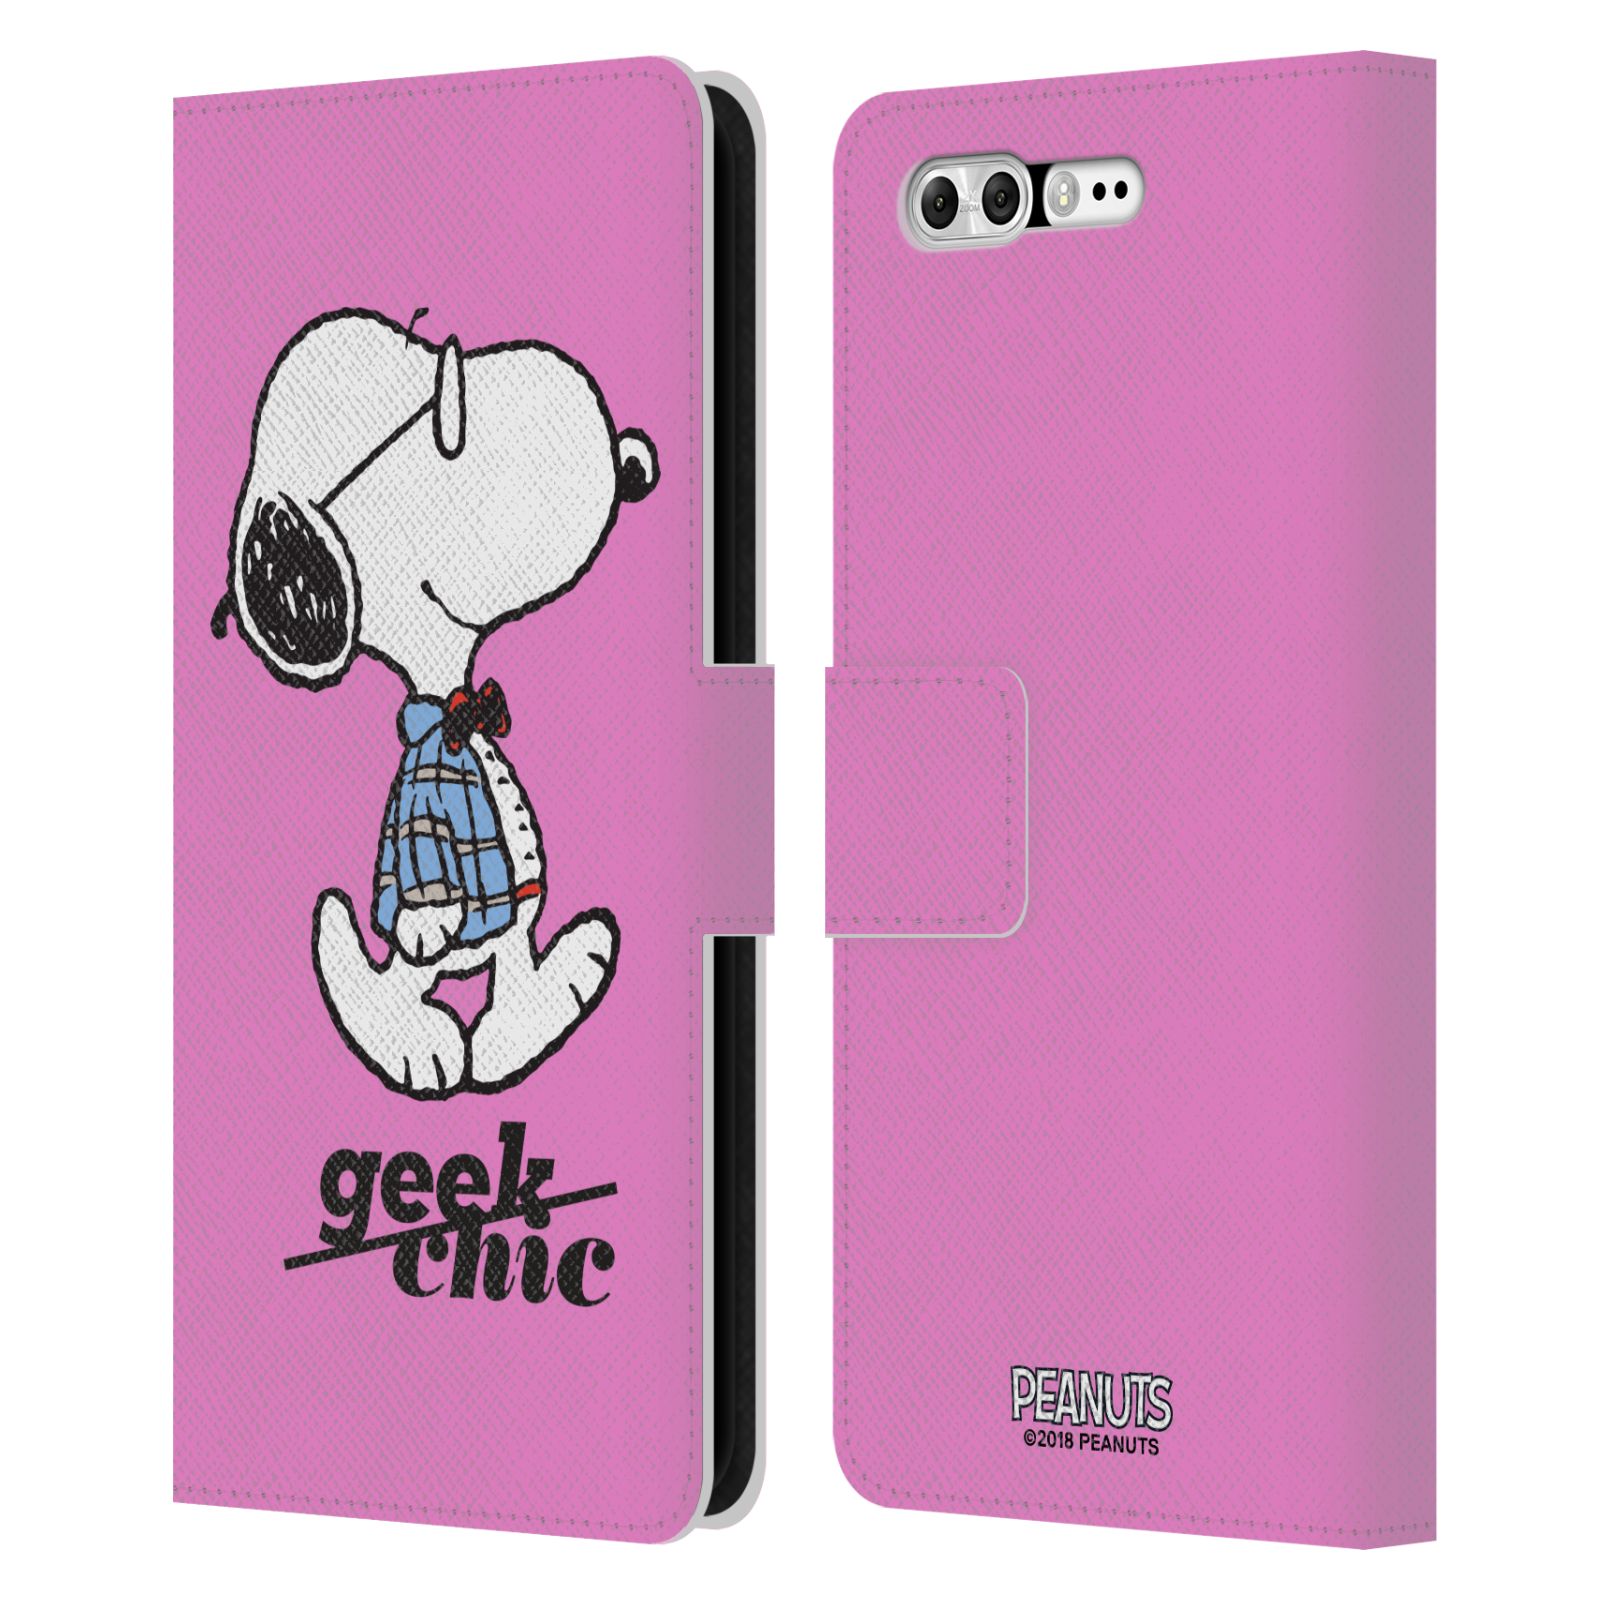 Pouzdro na mobil Asus Zenfone 4 Pro ZS551KL - Head Case - Peanuts - růžový pejsek snoopy nerd